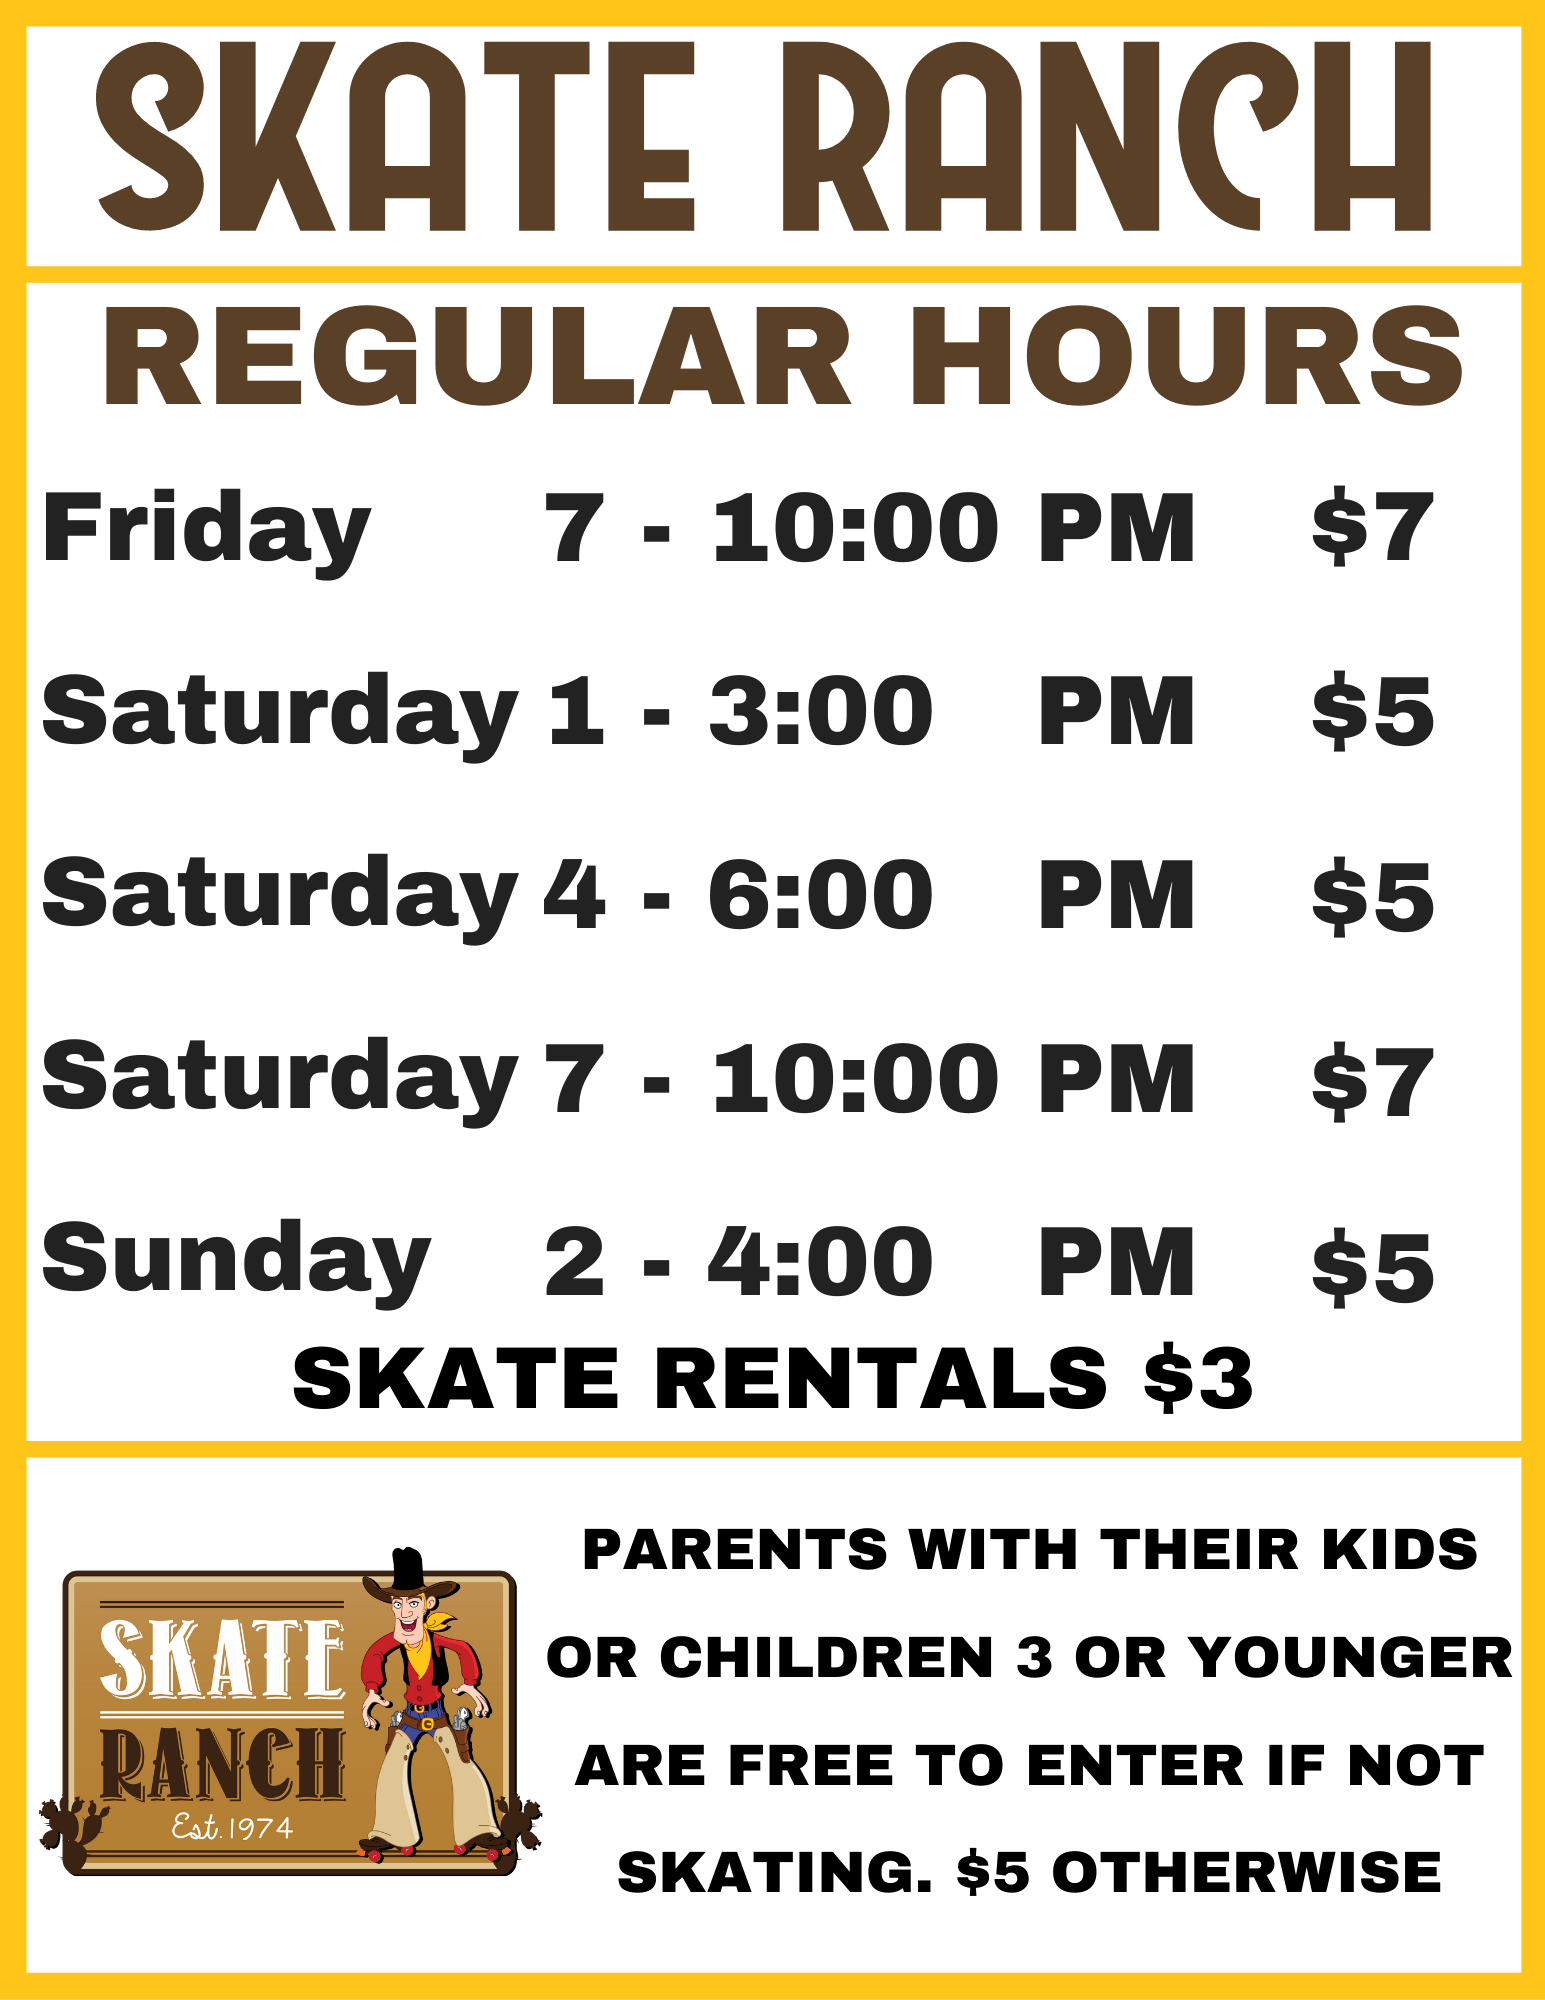 Skate Ranch ScheduleLufkin, TX Roller Skating